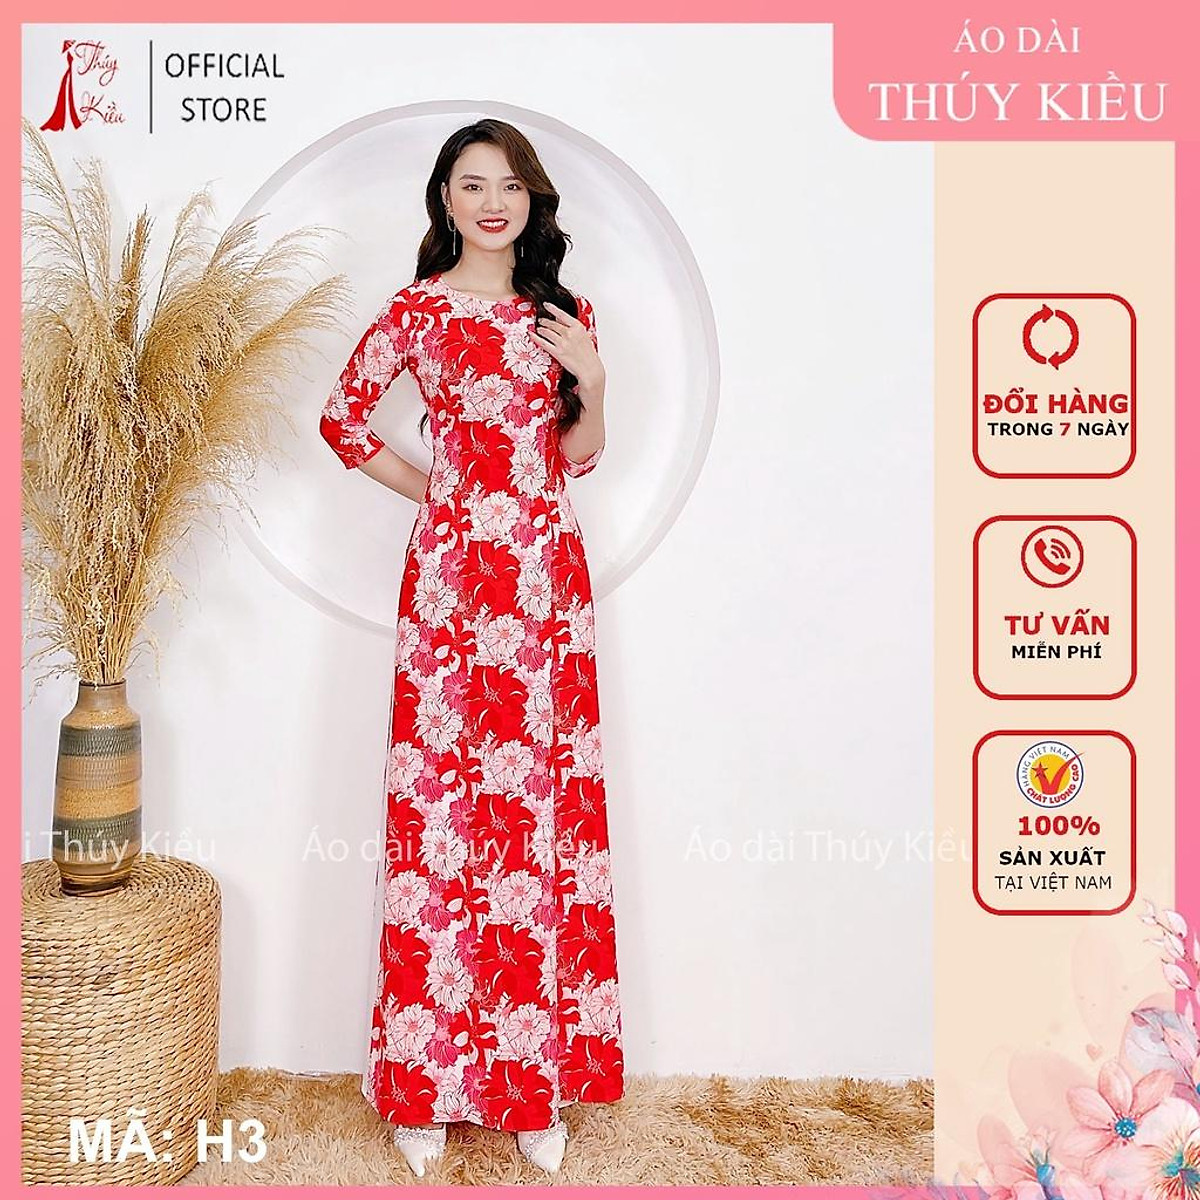 Áo dài nữ may sẵn thiết kế đẹp cách tân tết nền hoa đỏ H3 Thúy